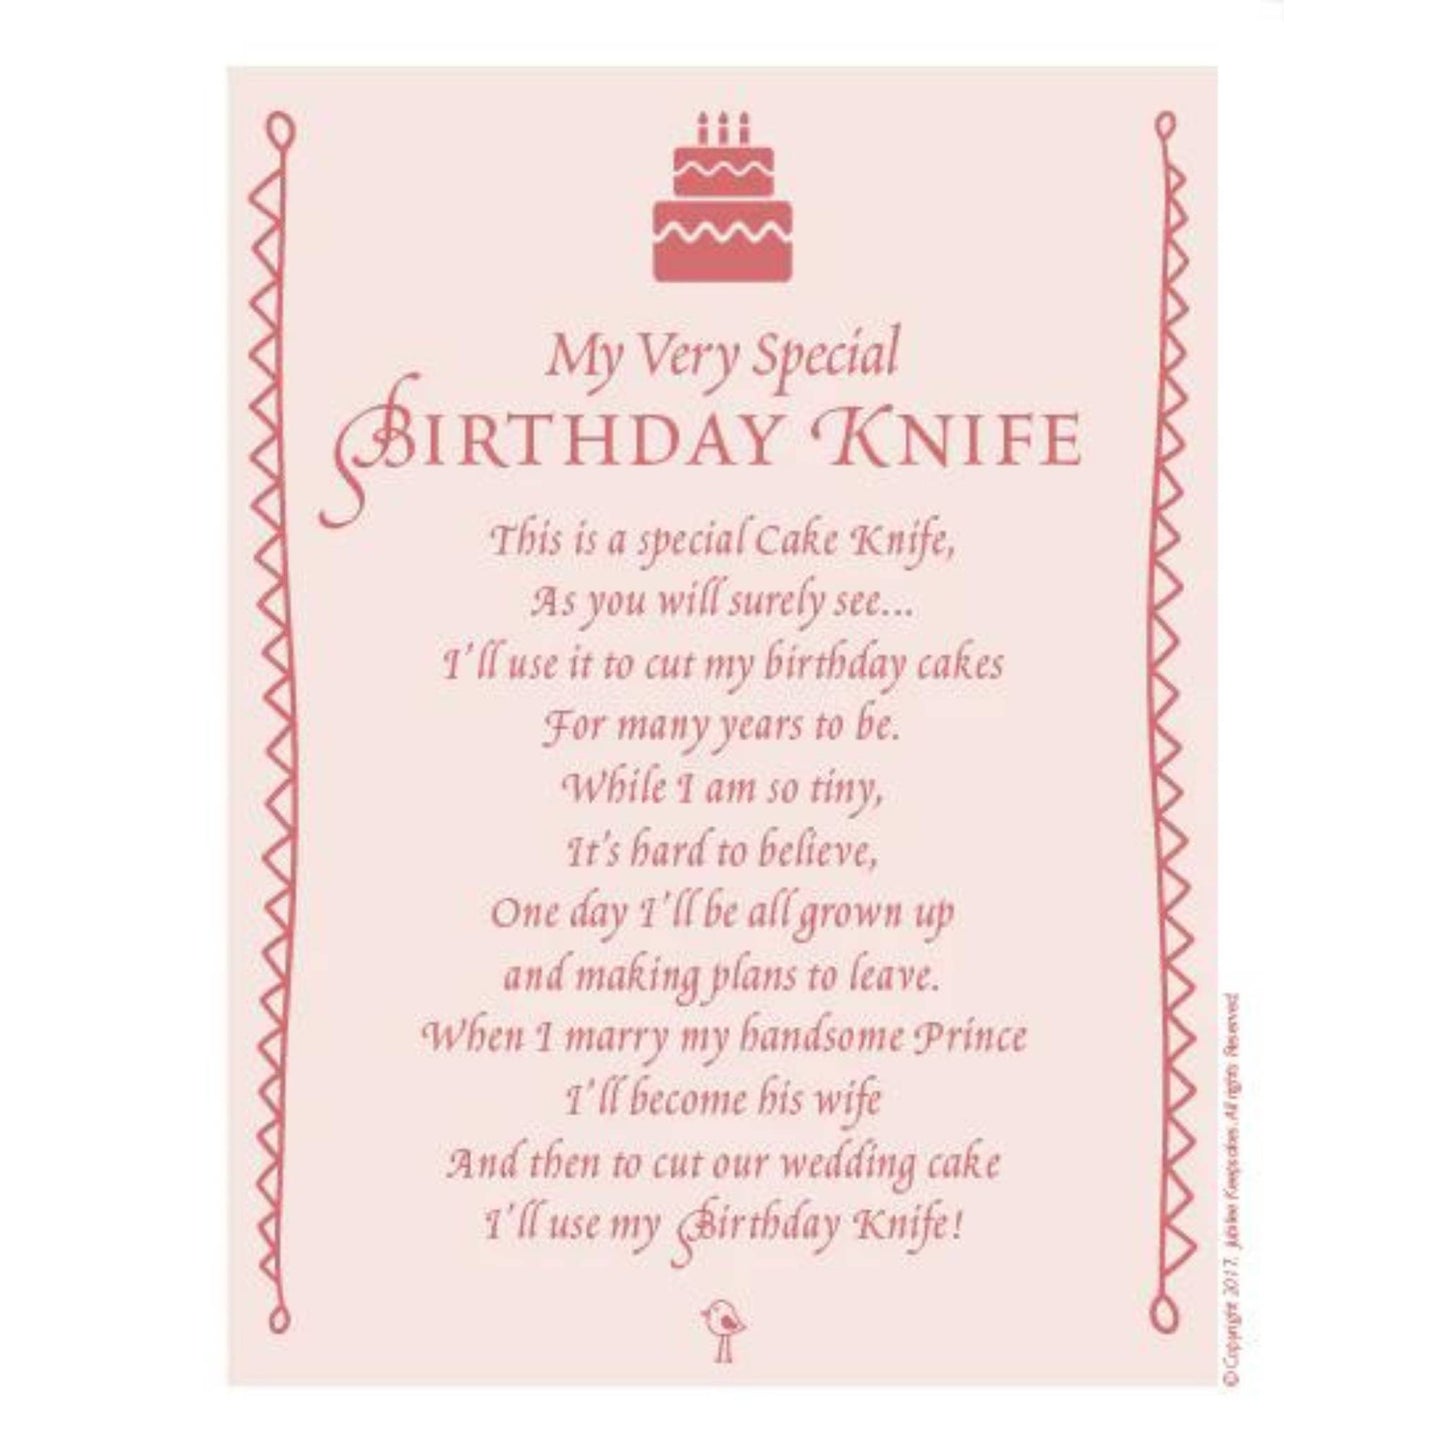 My Very Special Keepsake Knife - Birthday